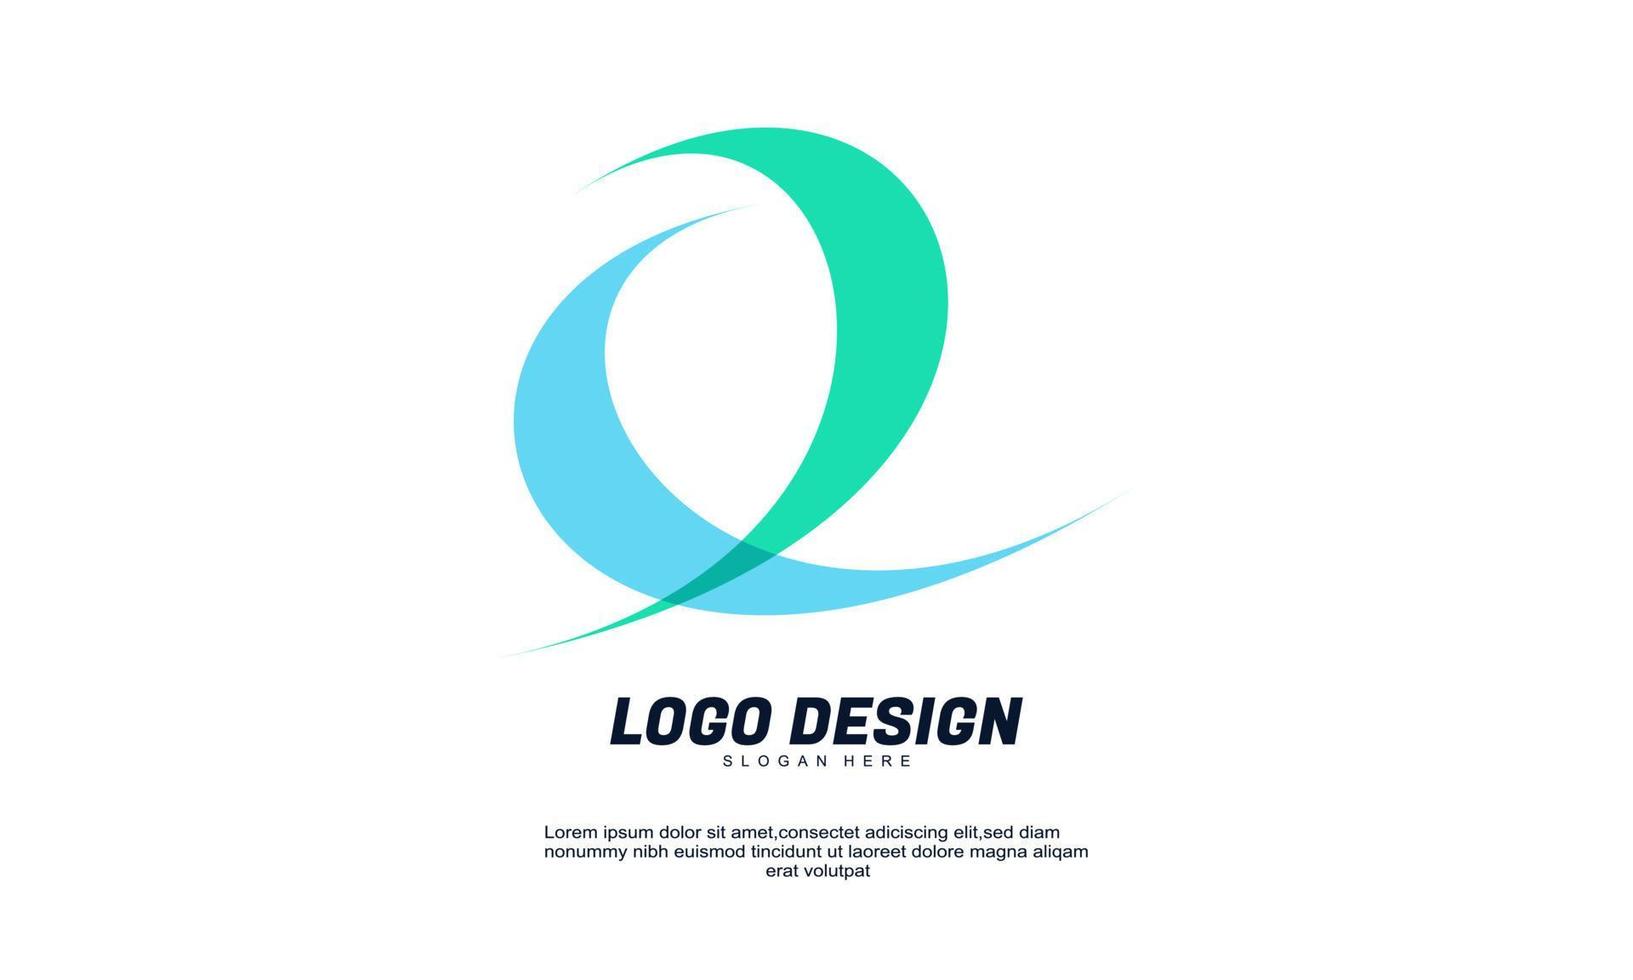 élément de logo de conception d'icône moderne créatif abstrait avec le modèle d'entreprise de l'entreprise meilleur pour le vecteur de logo d'identité et de conception